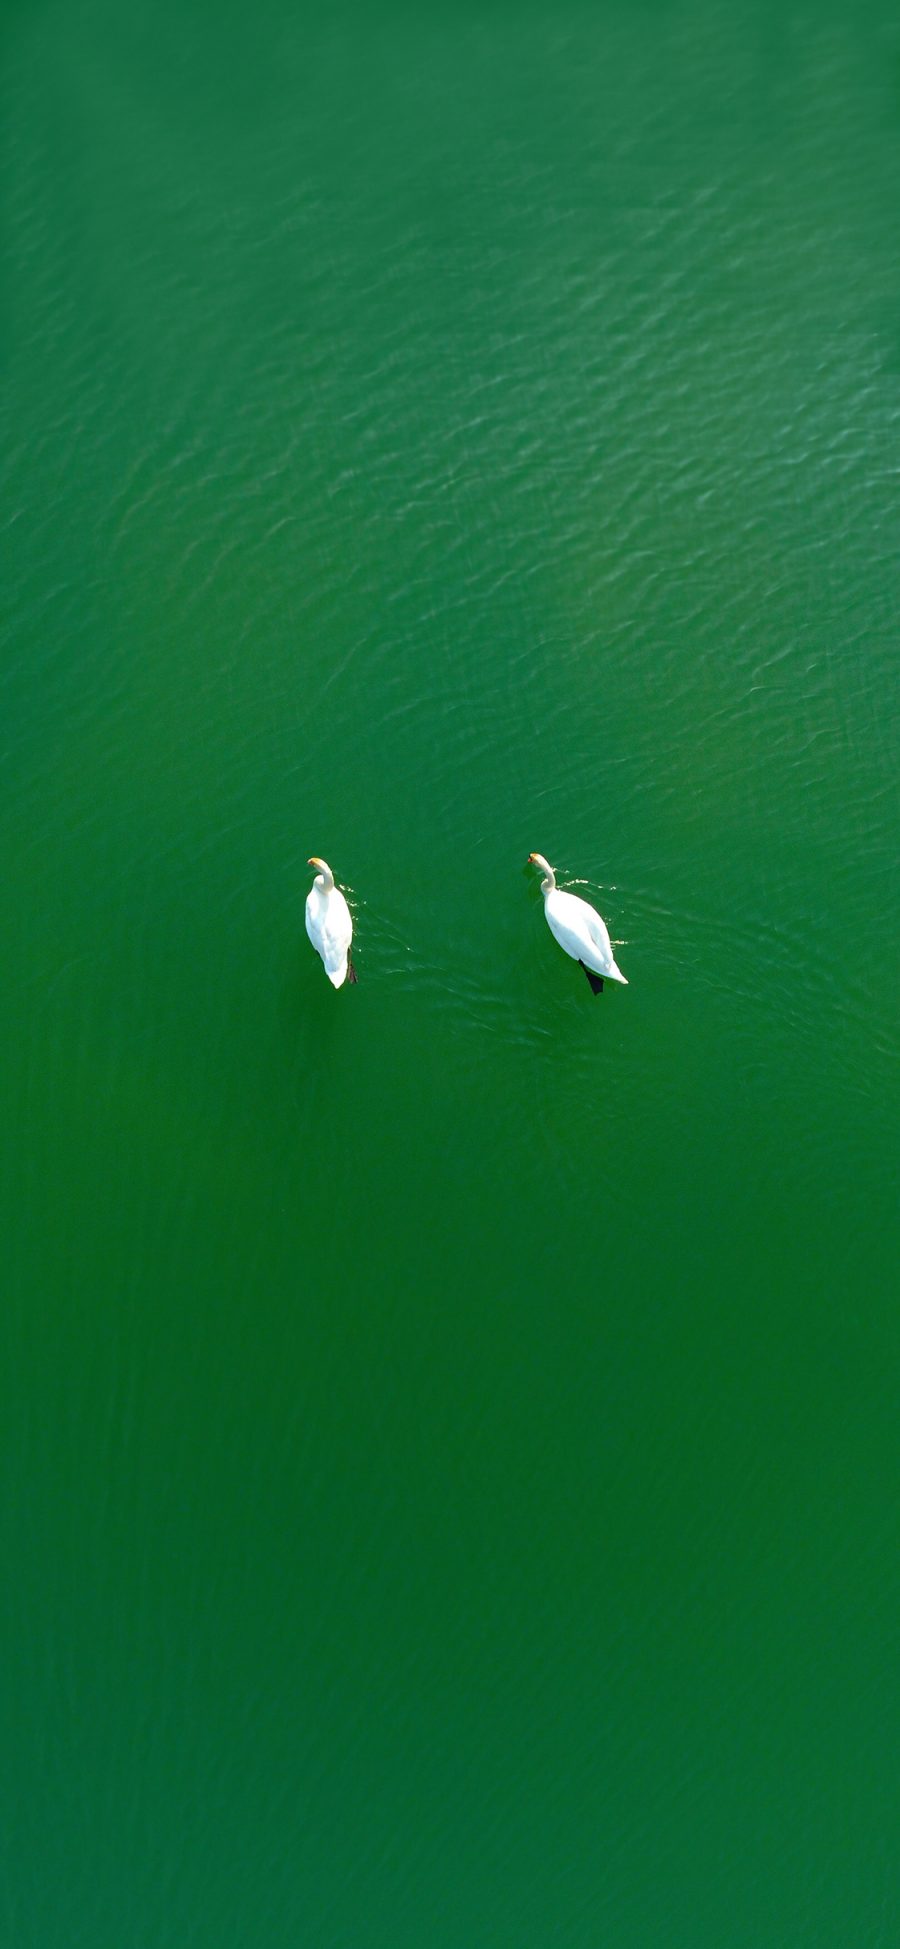 [2436×1125]天鹅 湖水 绿色 俯视 苹果手机壁纸图片